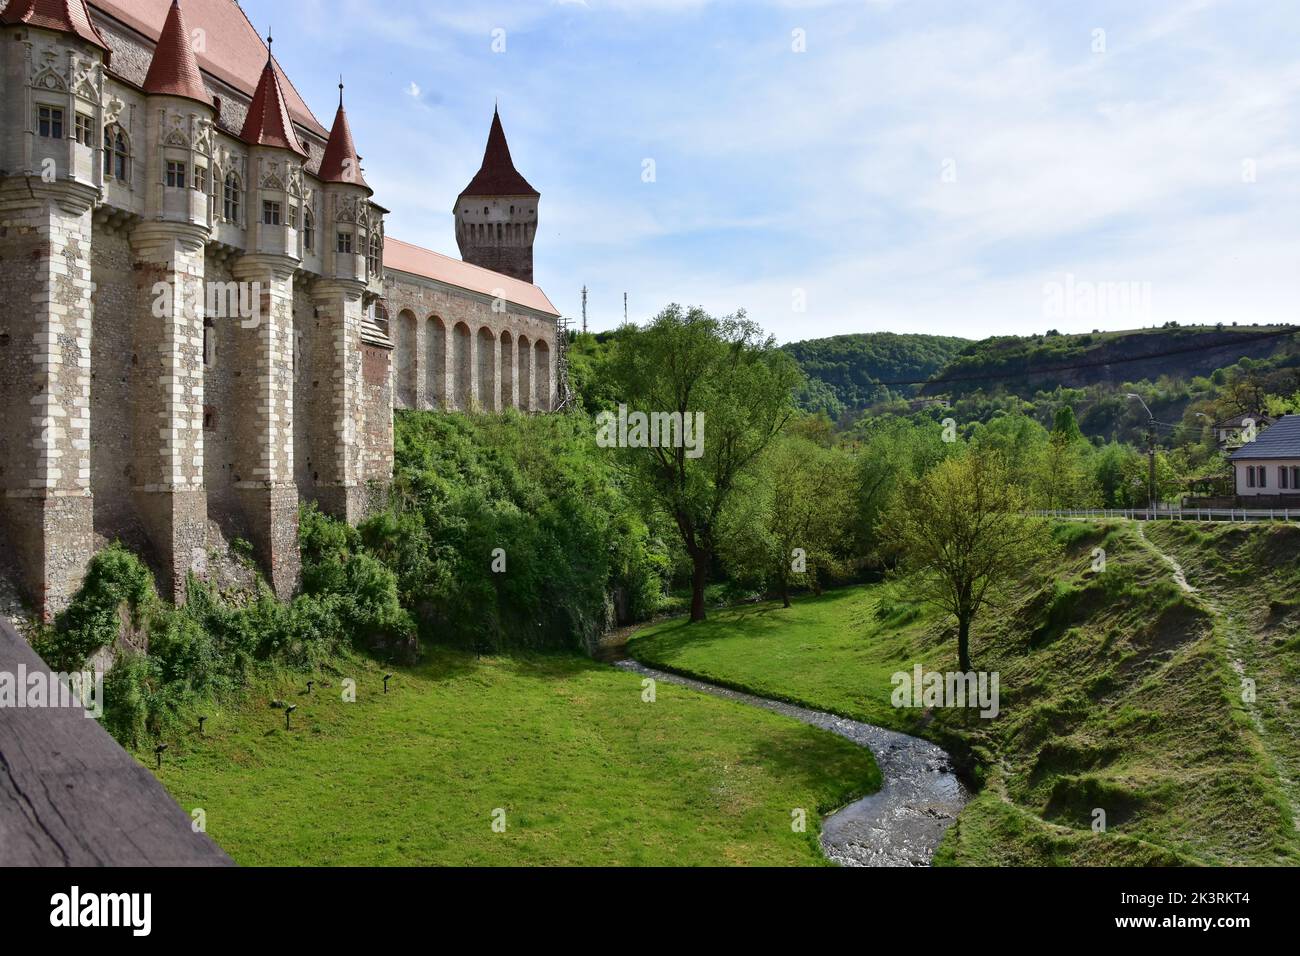 Die Burg Corvin, auch bekannt als Burg Hunyadi oder Burg Hunedoara, ist eine gotisch-Renaissance-Burg in Hunedoara, Rumänien Stockfoto